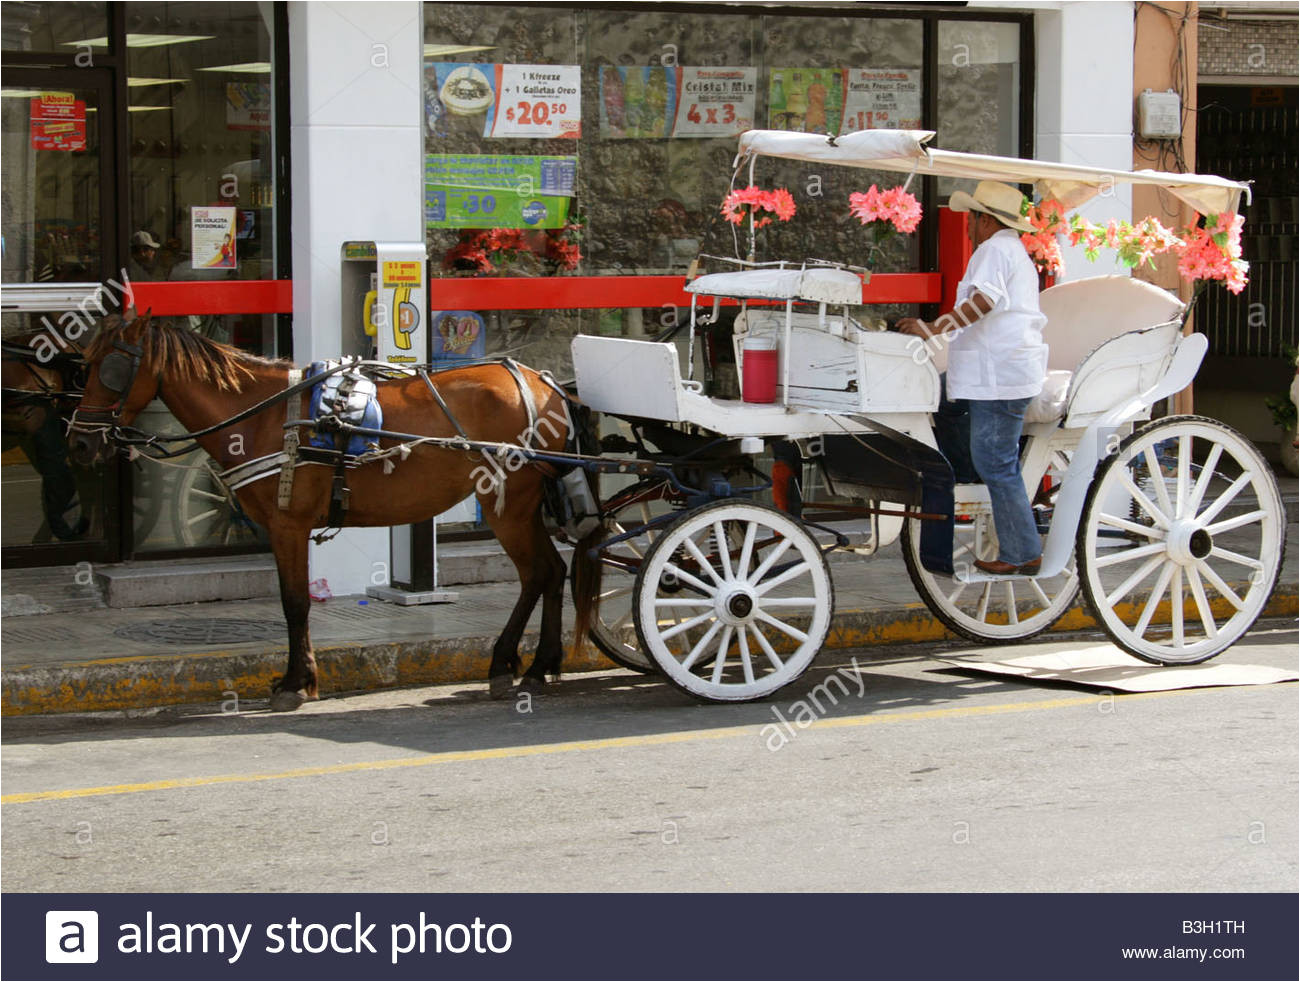 caballo y carro taxi peninsular merida yucatan mexico imagen de stock